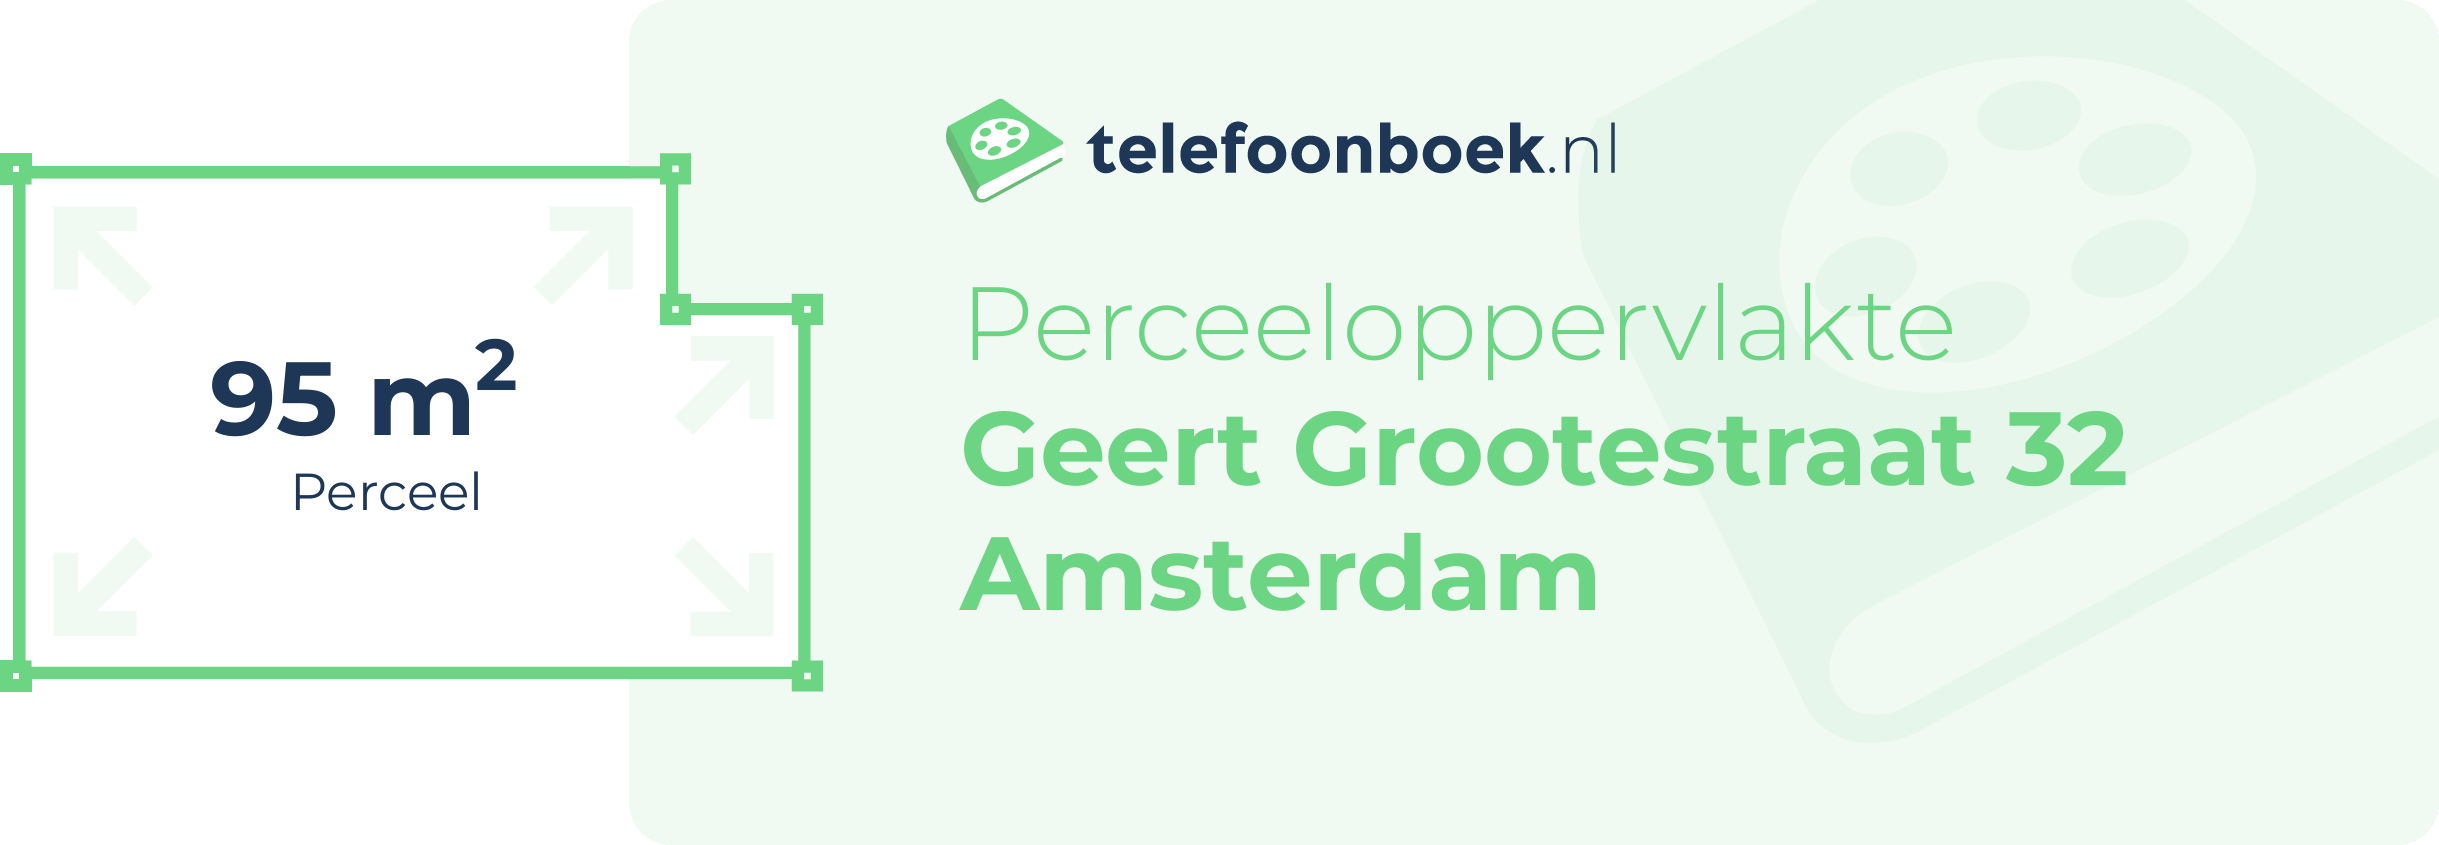 Perceeloppervlakte Geert Grootestraat 32 Amsterdam